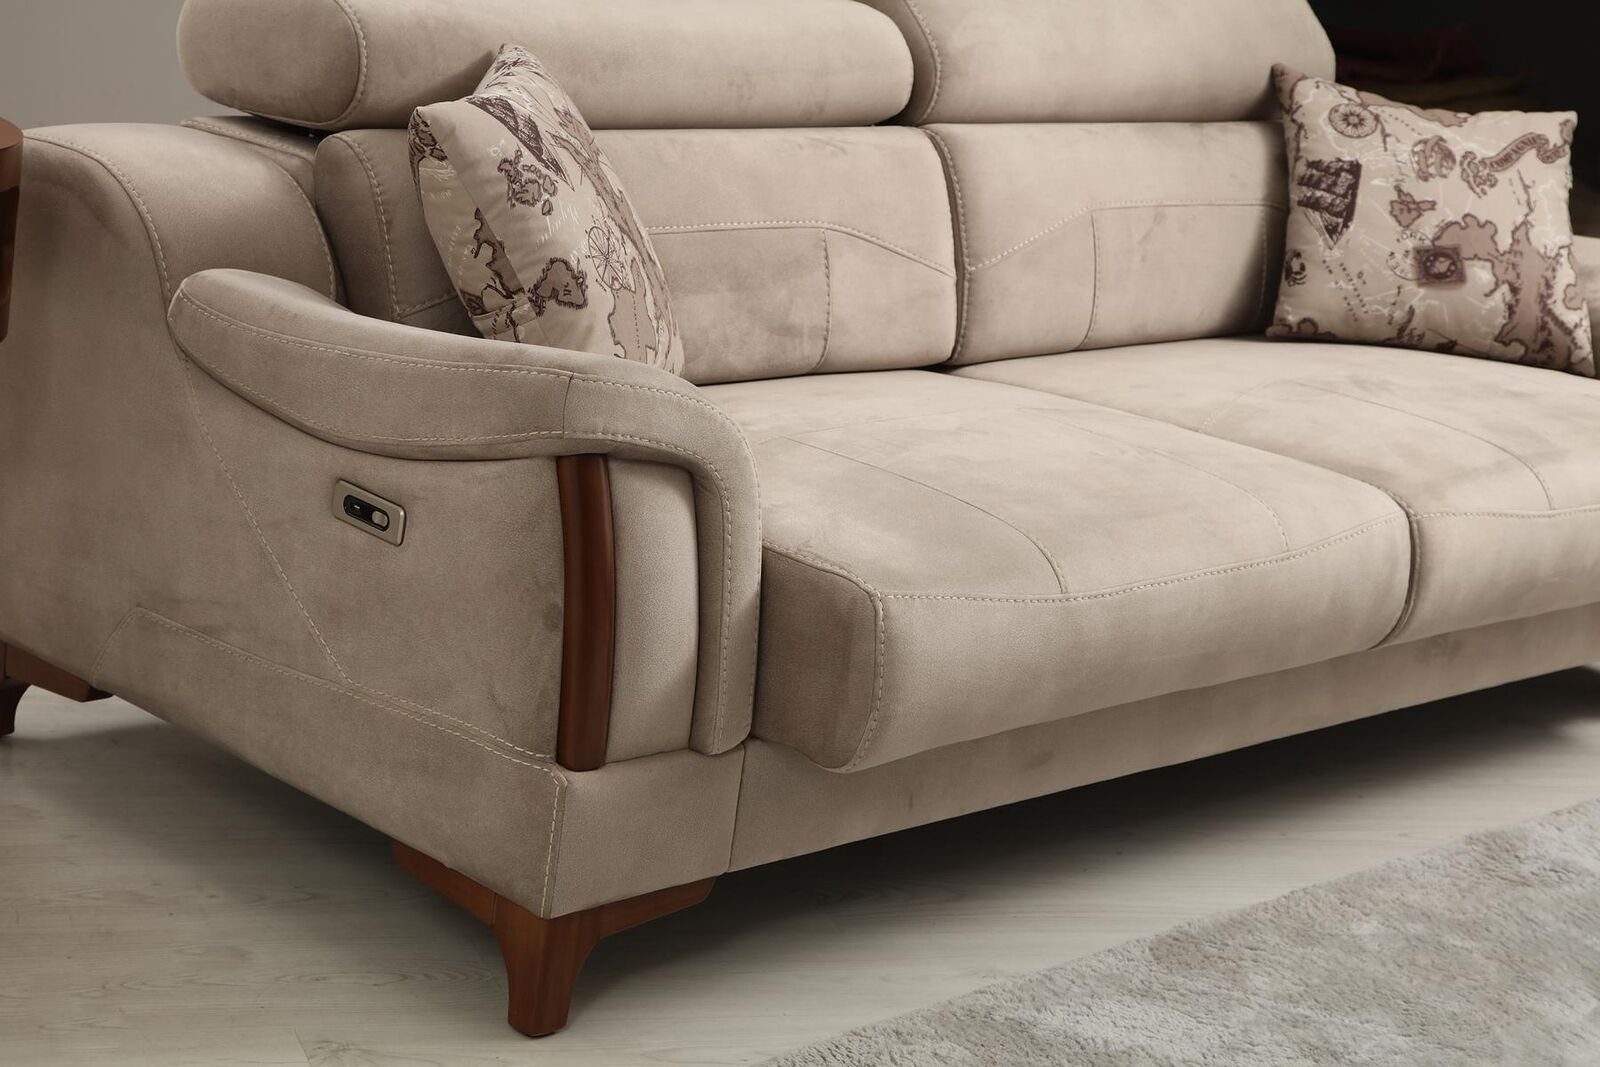 JVmoebel 3-Sitzer Sofa Wohnzimmer Designer Modern Teile, Made Polster Textil, Möbel in 1 Europa